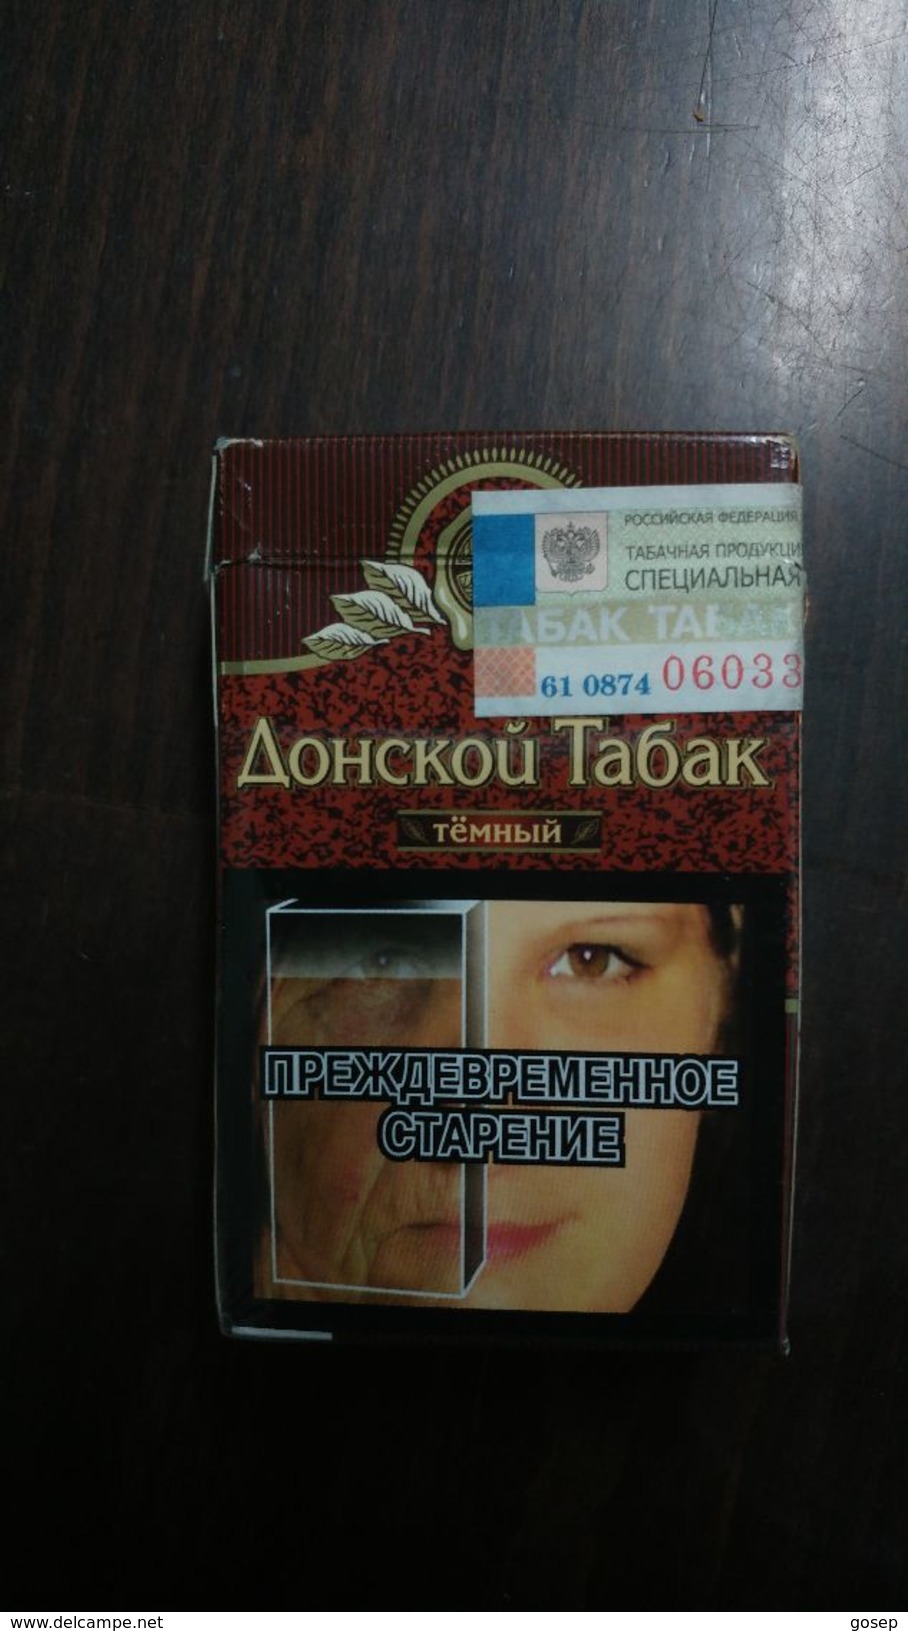 Russia-box Empty Cigarette-aohckou Tabak-(1) - Porta Sigarette (vuoti)